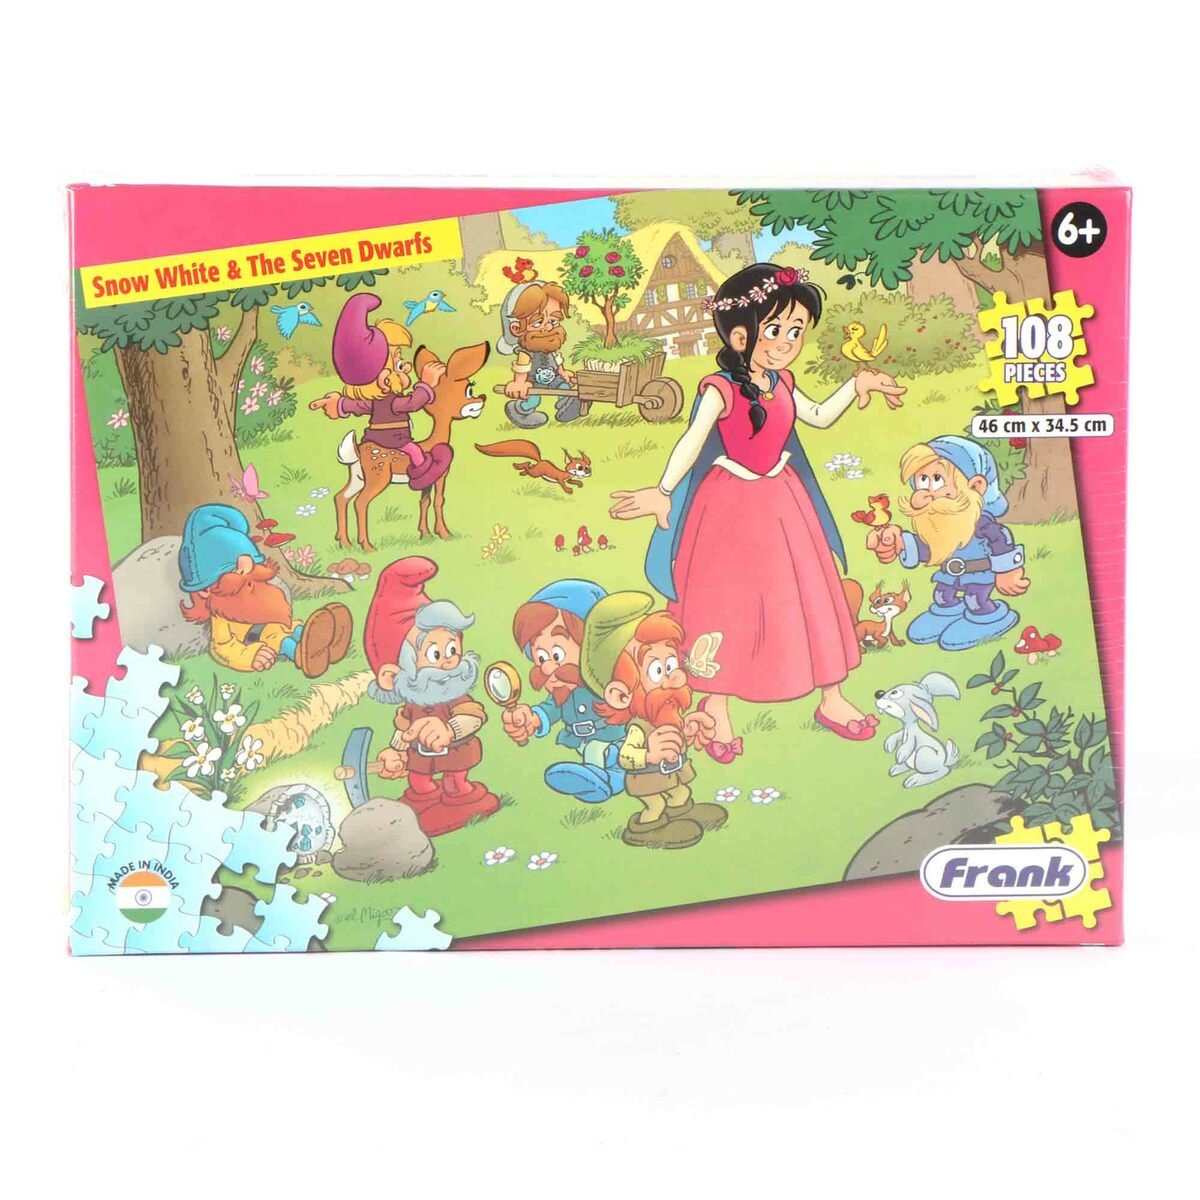 Frank Snow White & The Seven Dwarfs Puzzle 108pcs 33416